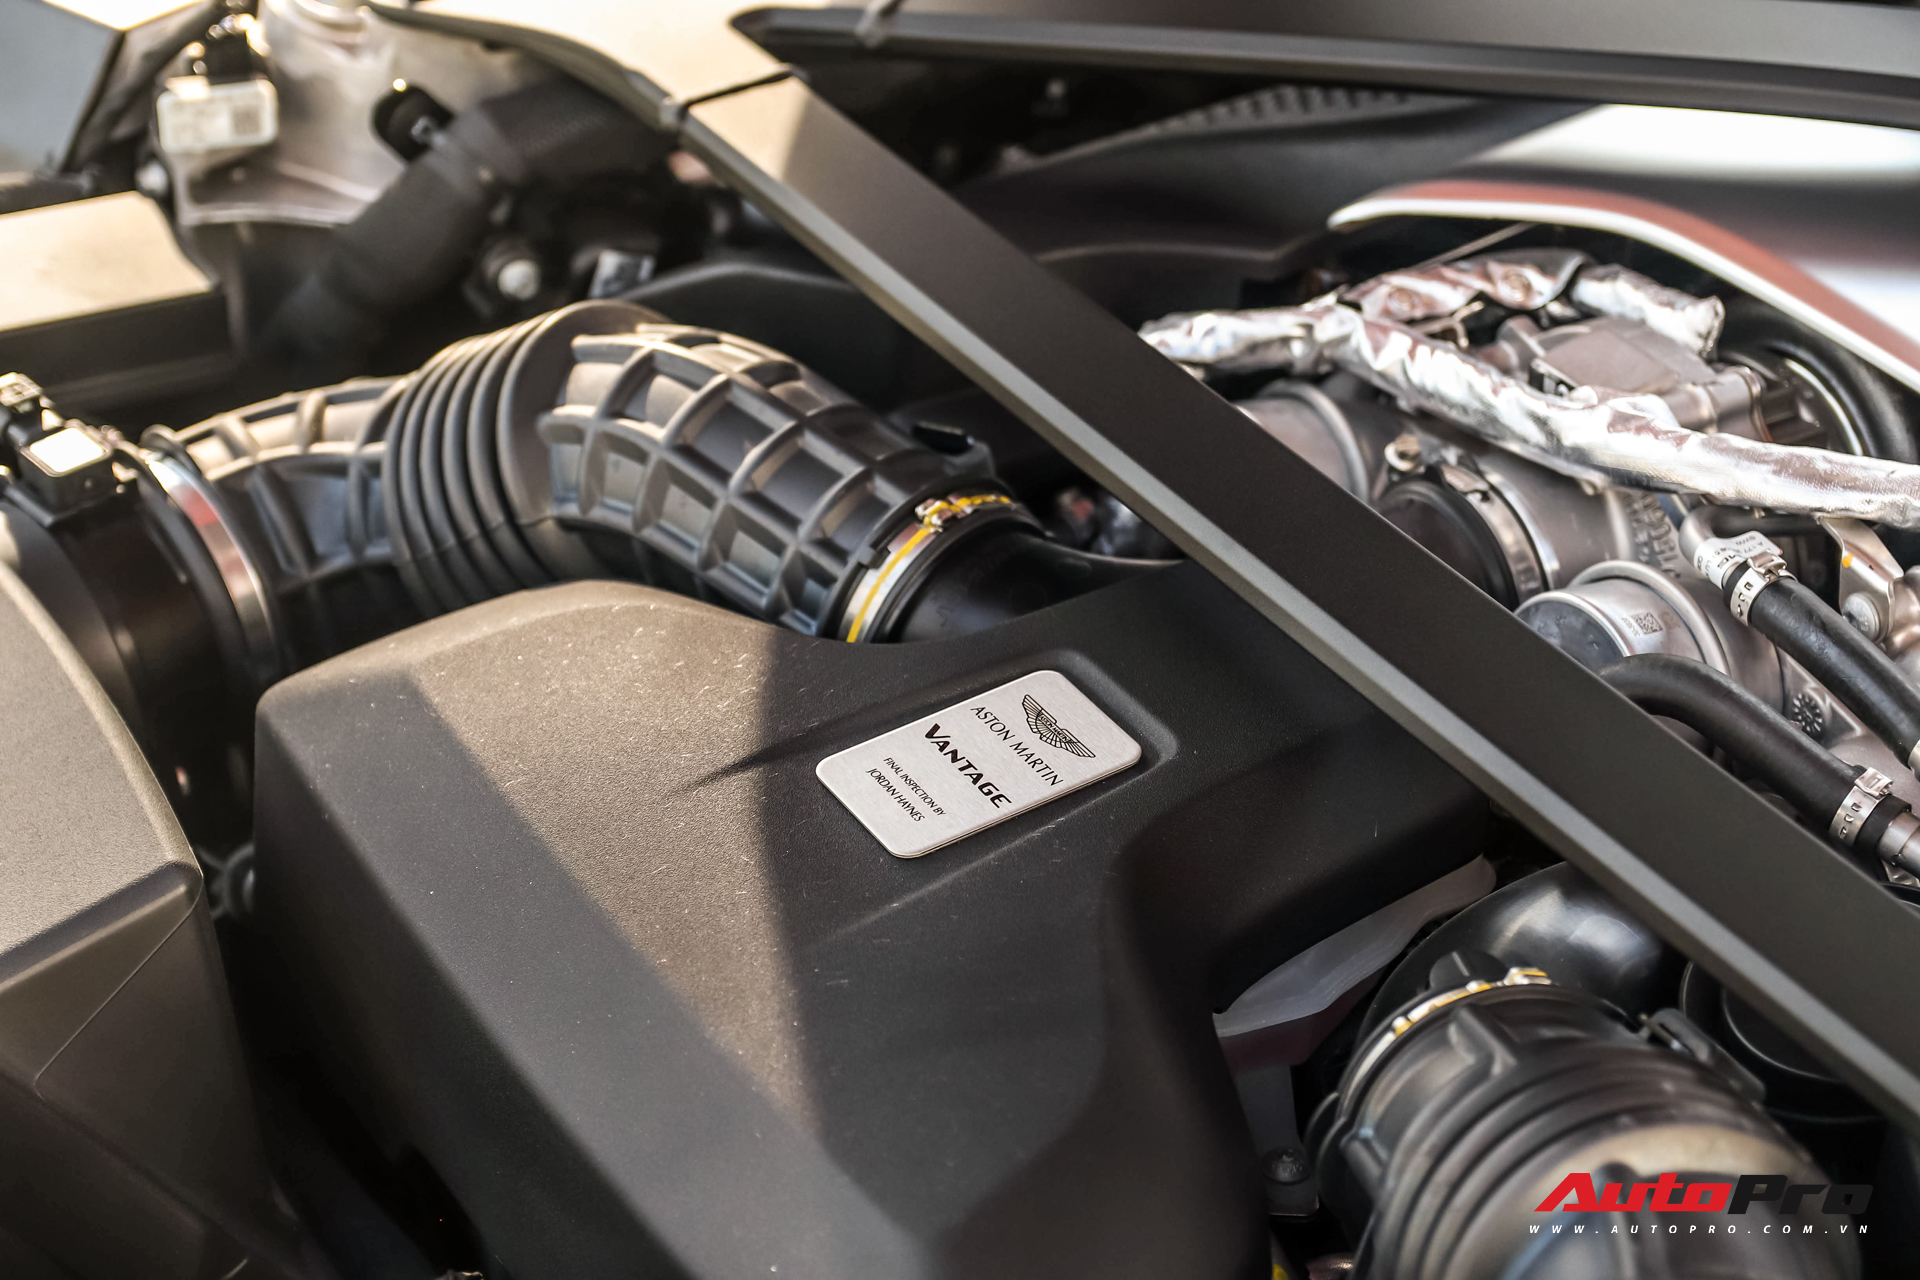 Kỳ công thiết kế decal, Minh Nhựa chia tay Aston Martin V8 Vantage, có thể dọn chỗ đón siêu xe mới giống Nguyễn Quốc Cường - Ảnh 4.